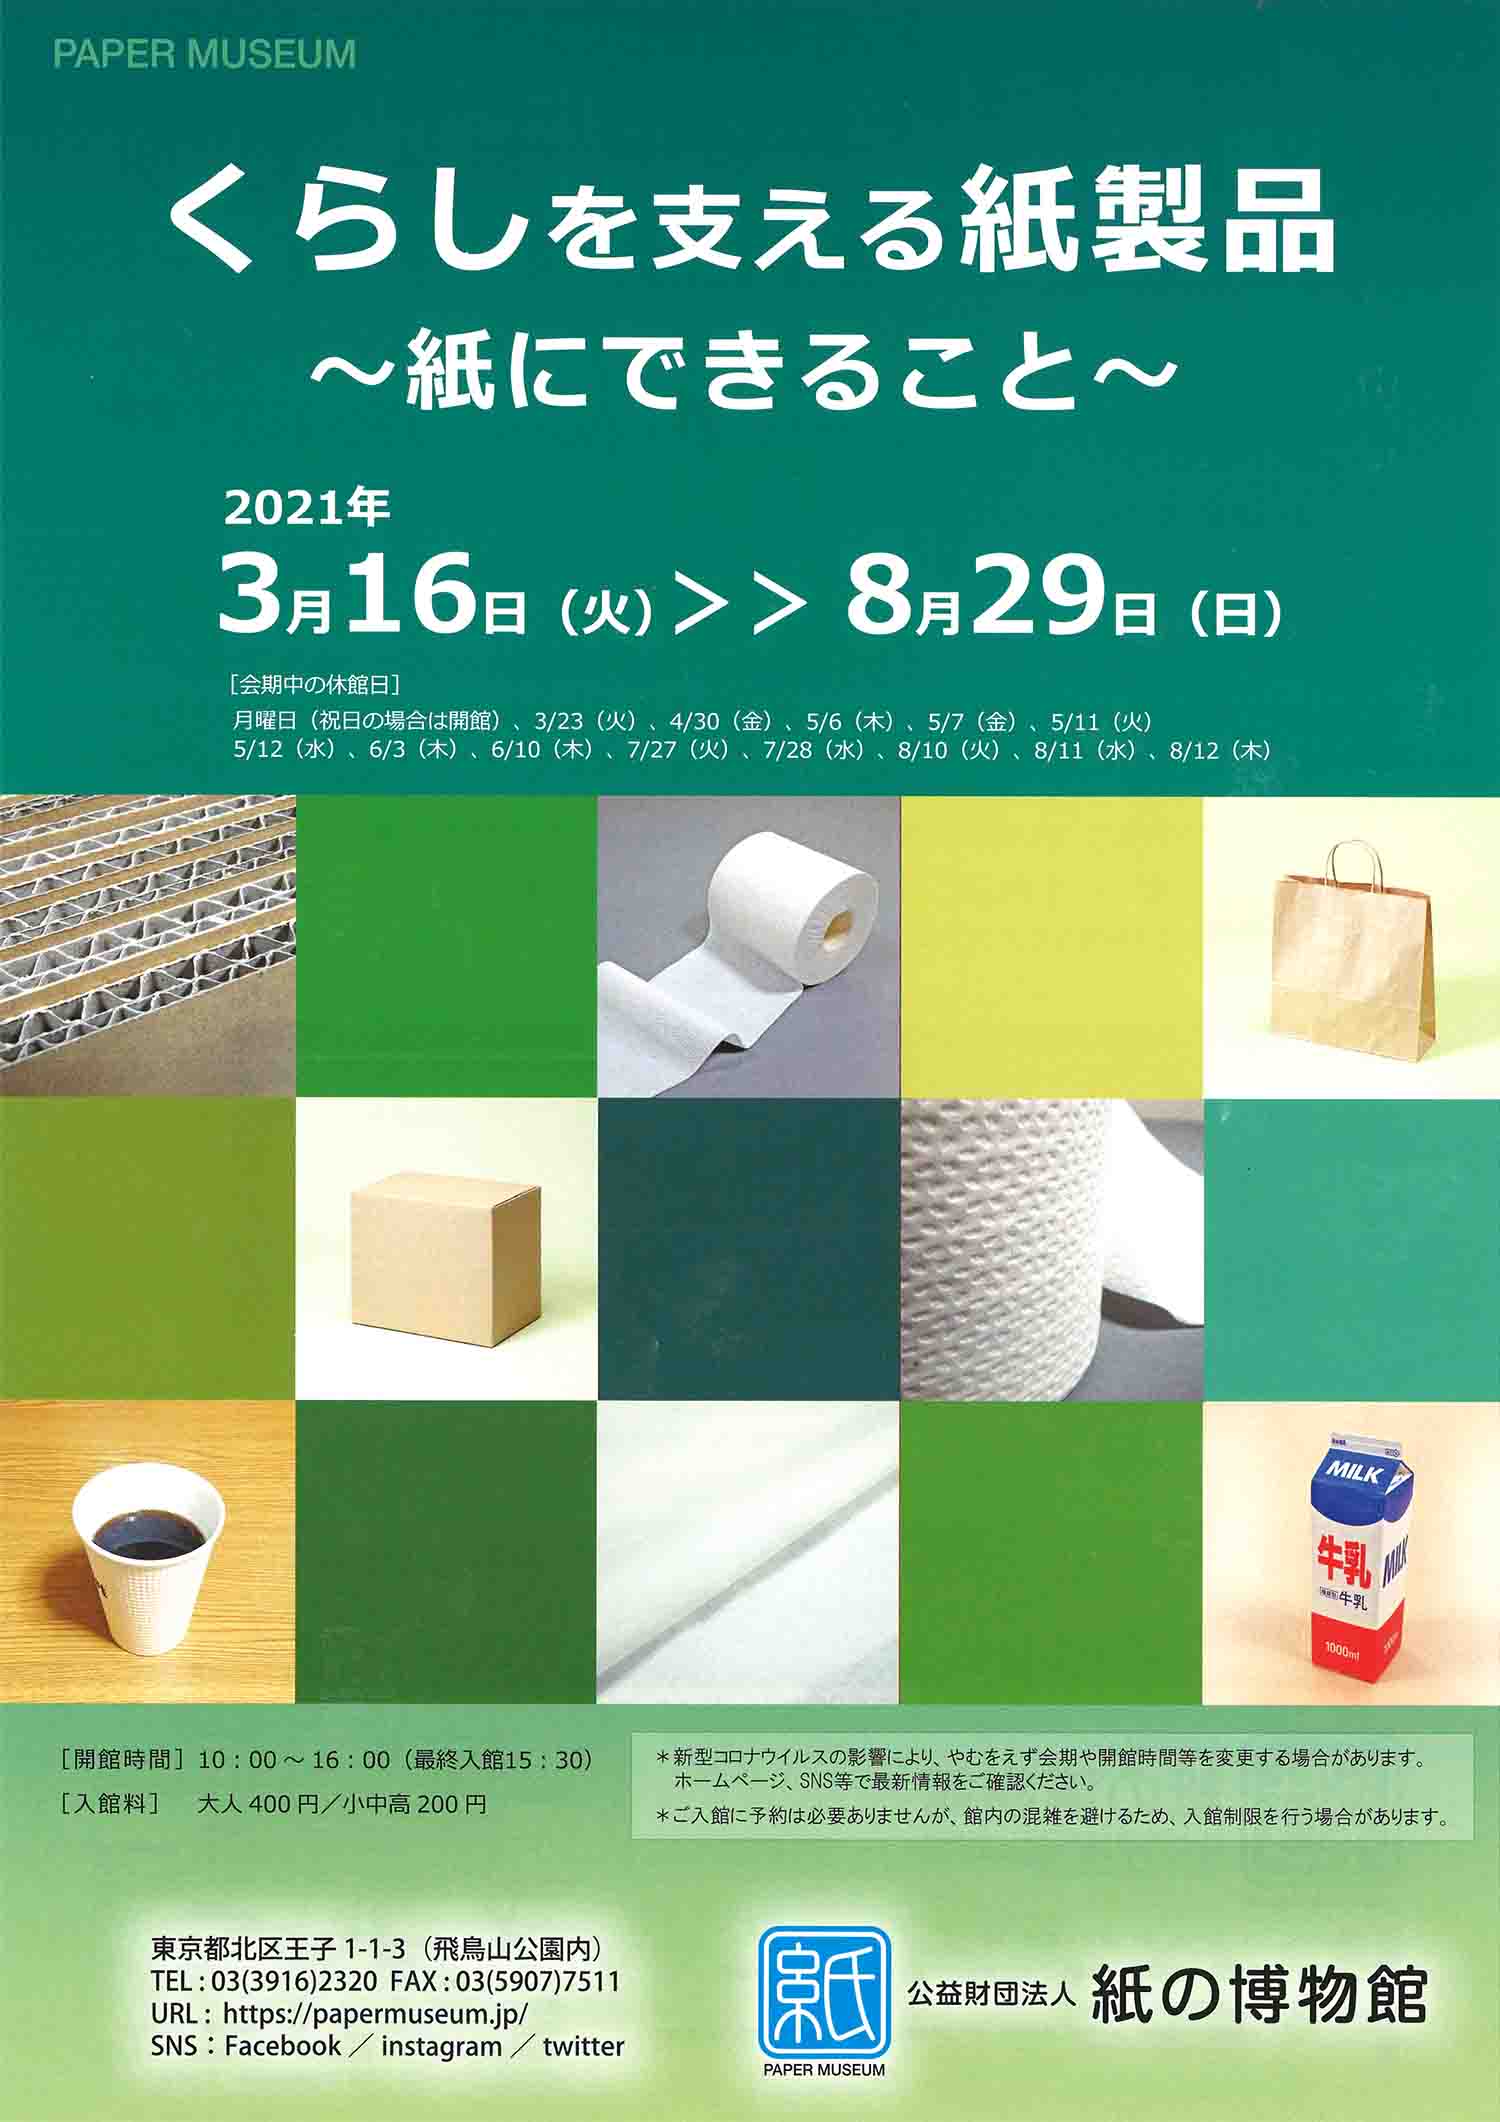 紙の博物館企画展「くらしを支える紙製品〜紙にできること〜」チラシ